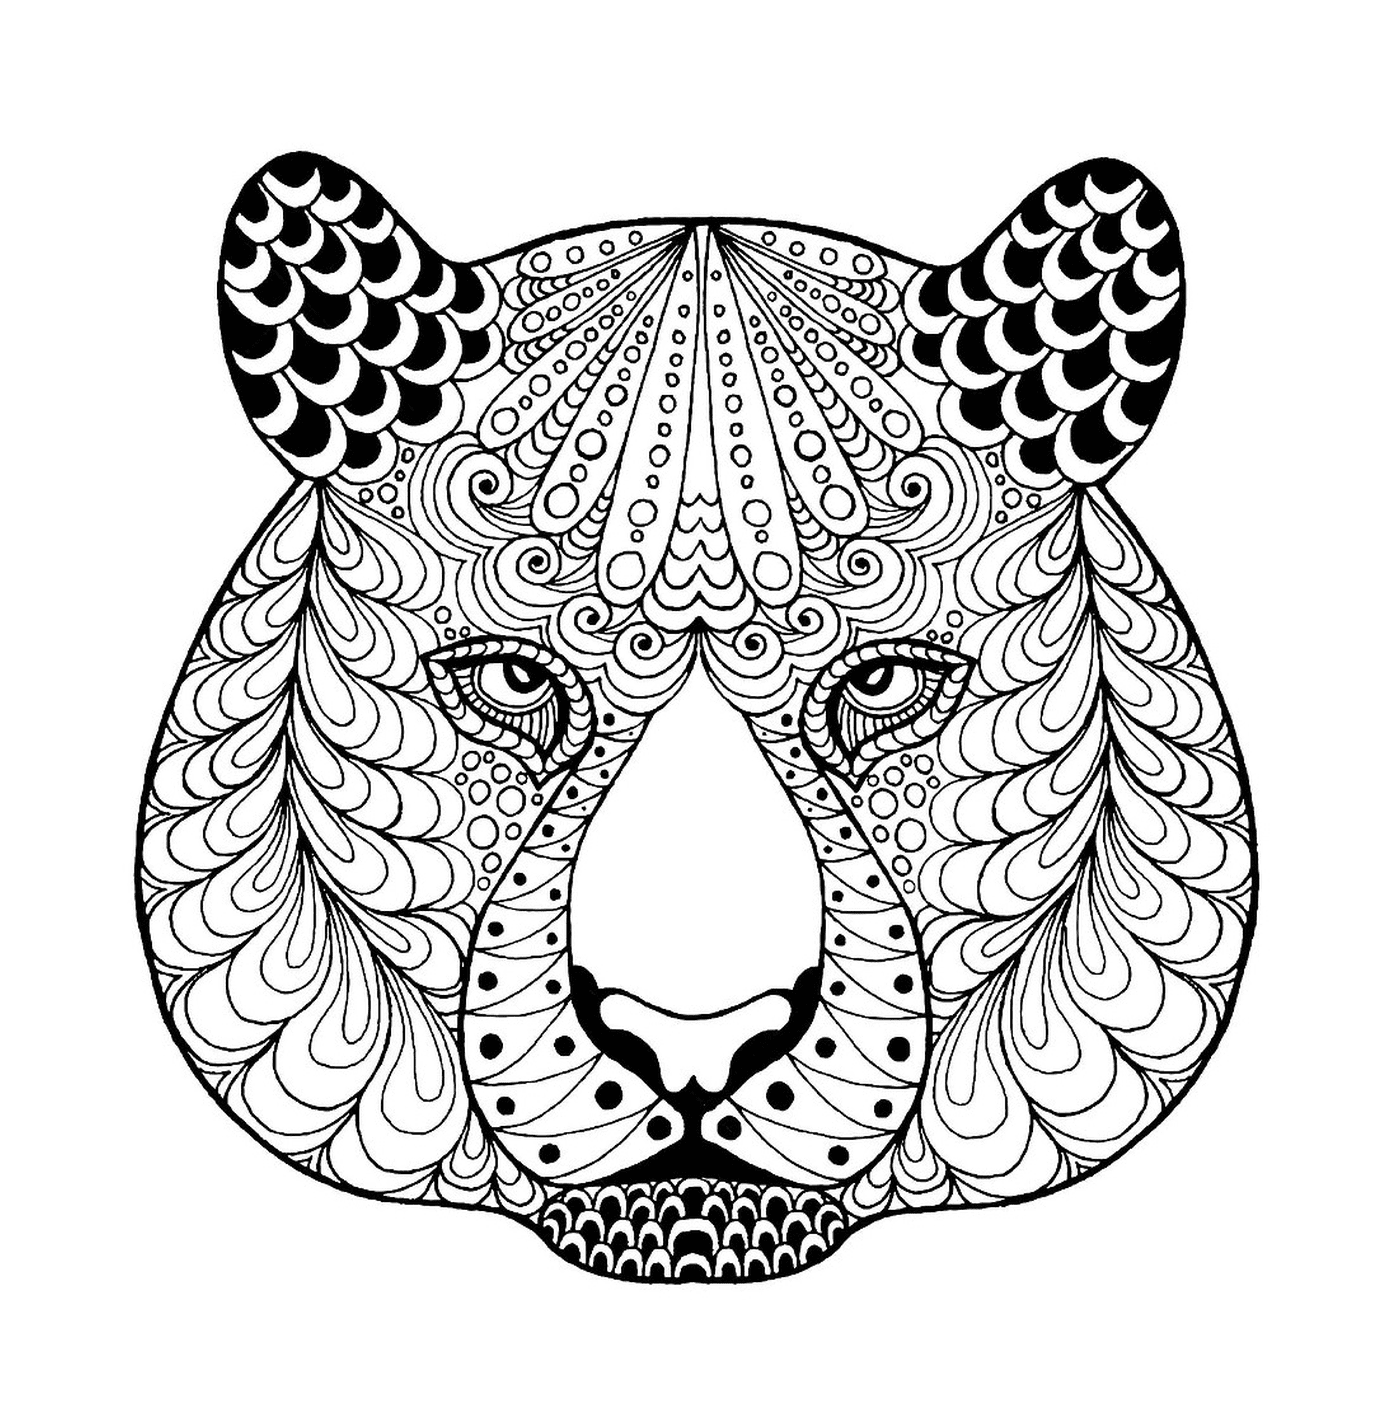  Una cabeza de tigre zentangle con patrones 